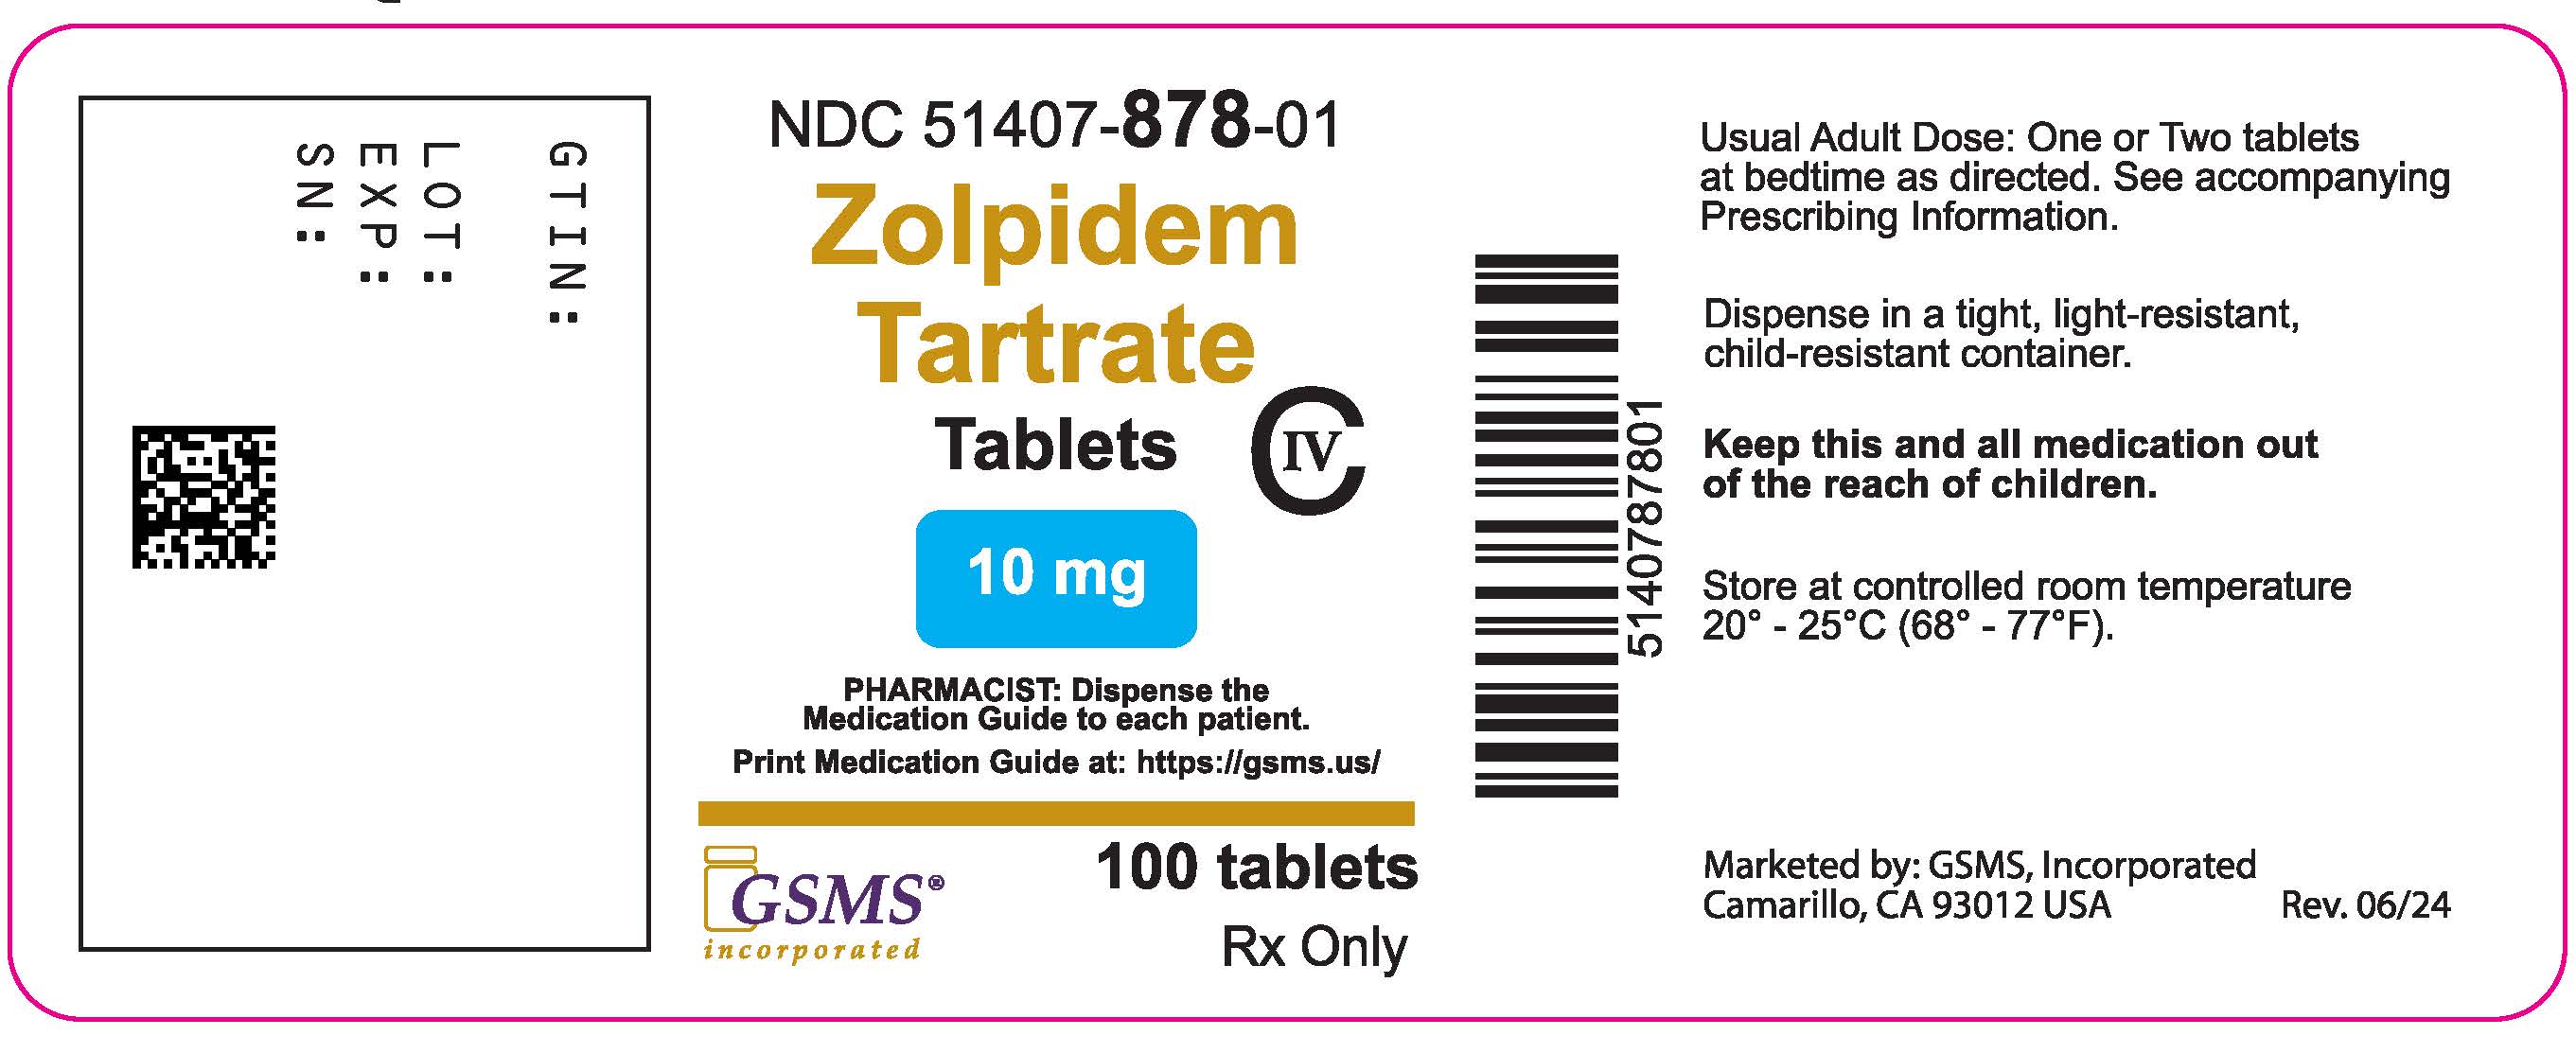 51407-878-01LB - Zolpidem 10 mg - Rev. 0624.jpg